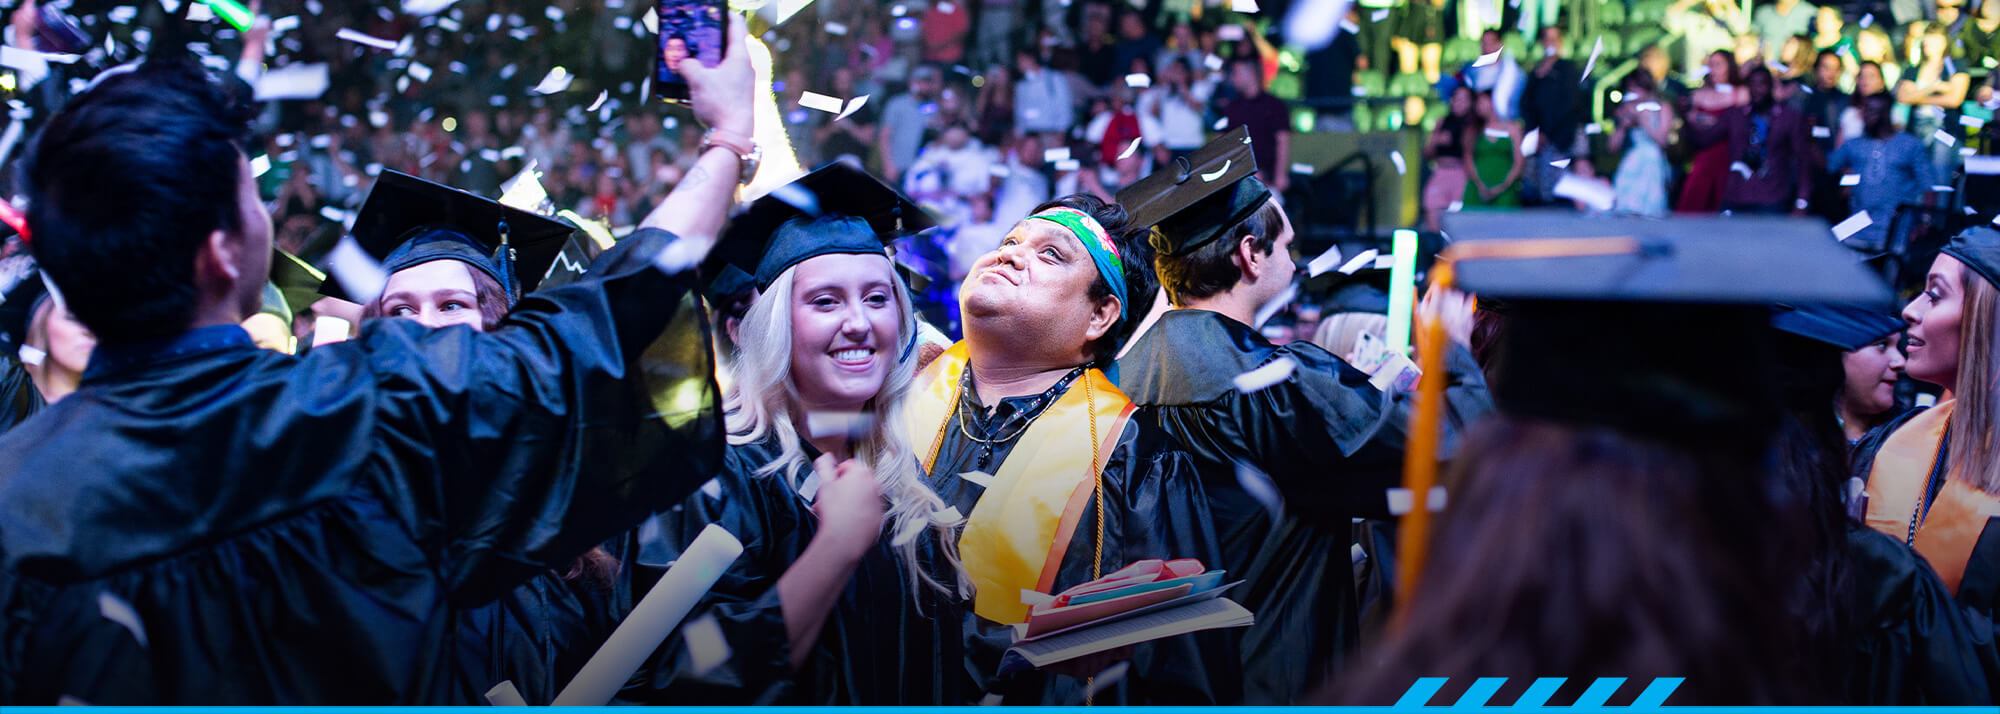 Graduates celebrate at the TCC arena in Tucson.